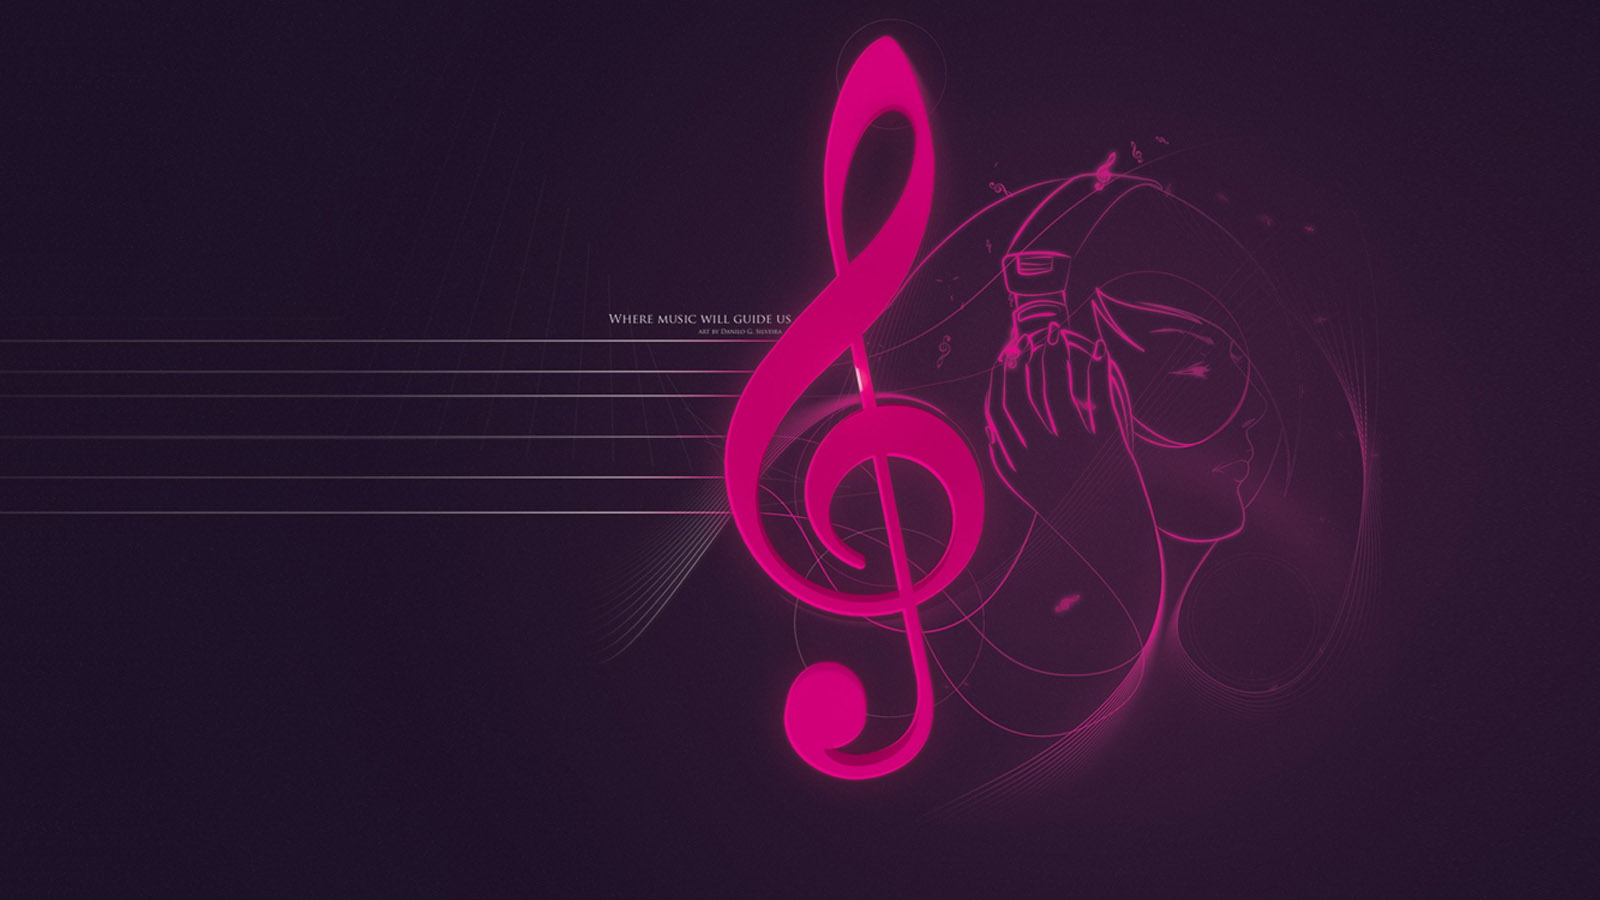 Desktop wallpaper of music notation